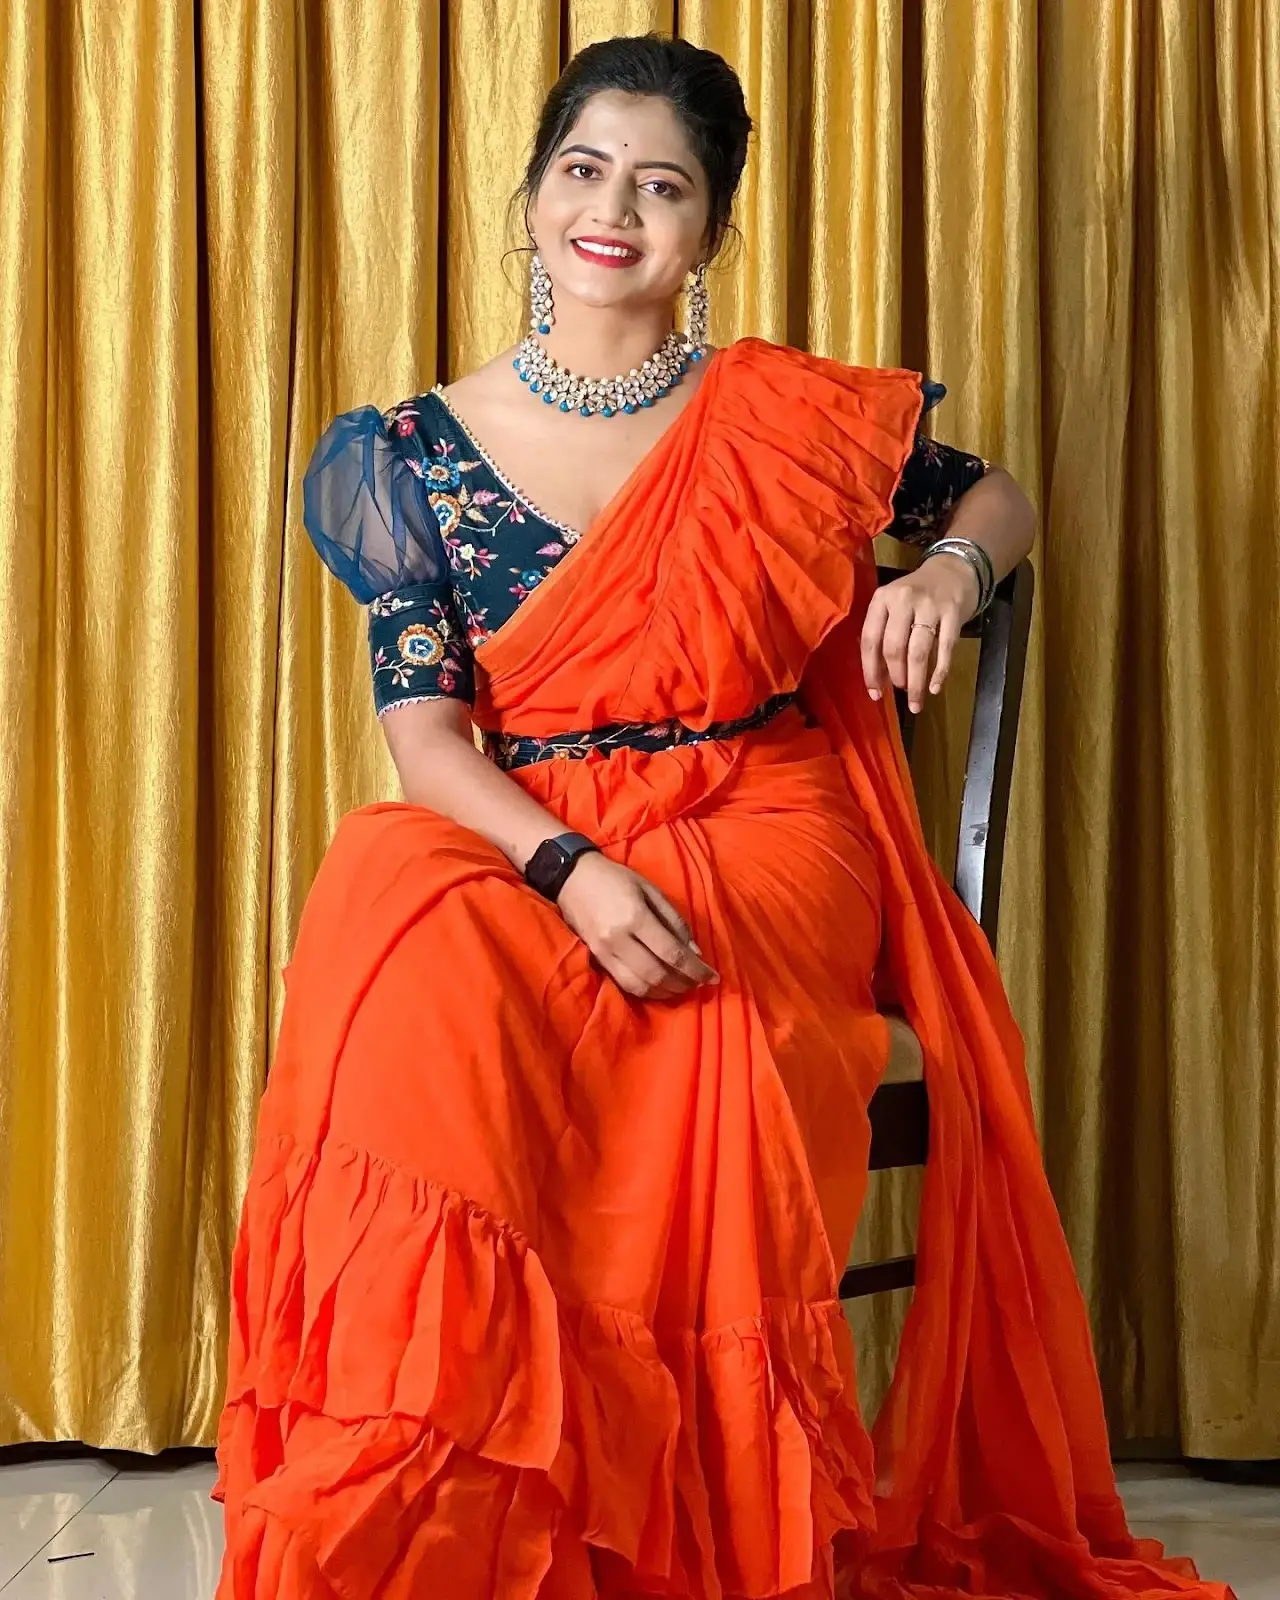 INDIAN TV ACTRESS SHIVA JYOTHI STILLS IN TRADITIONAL ORANGE SAREE